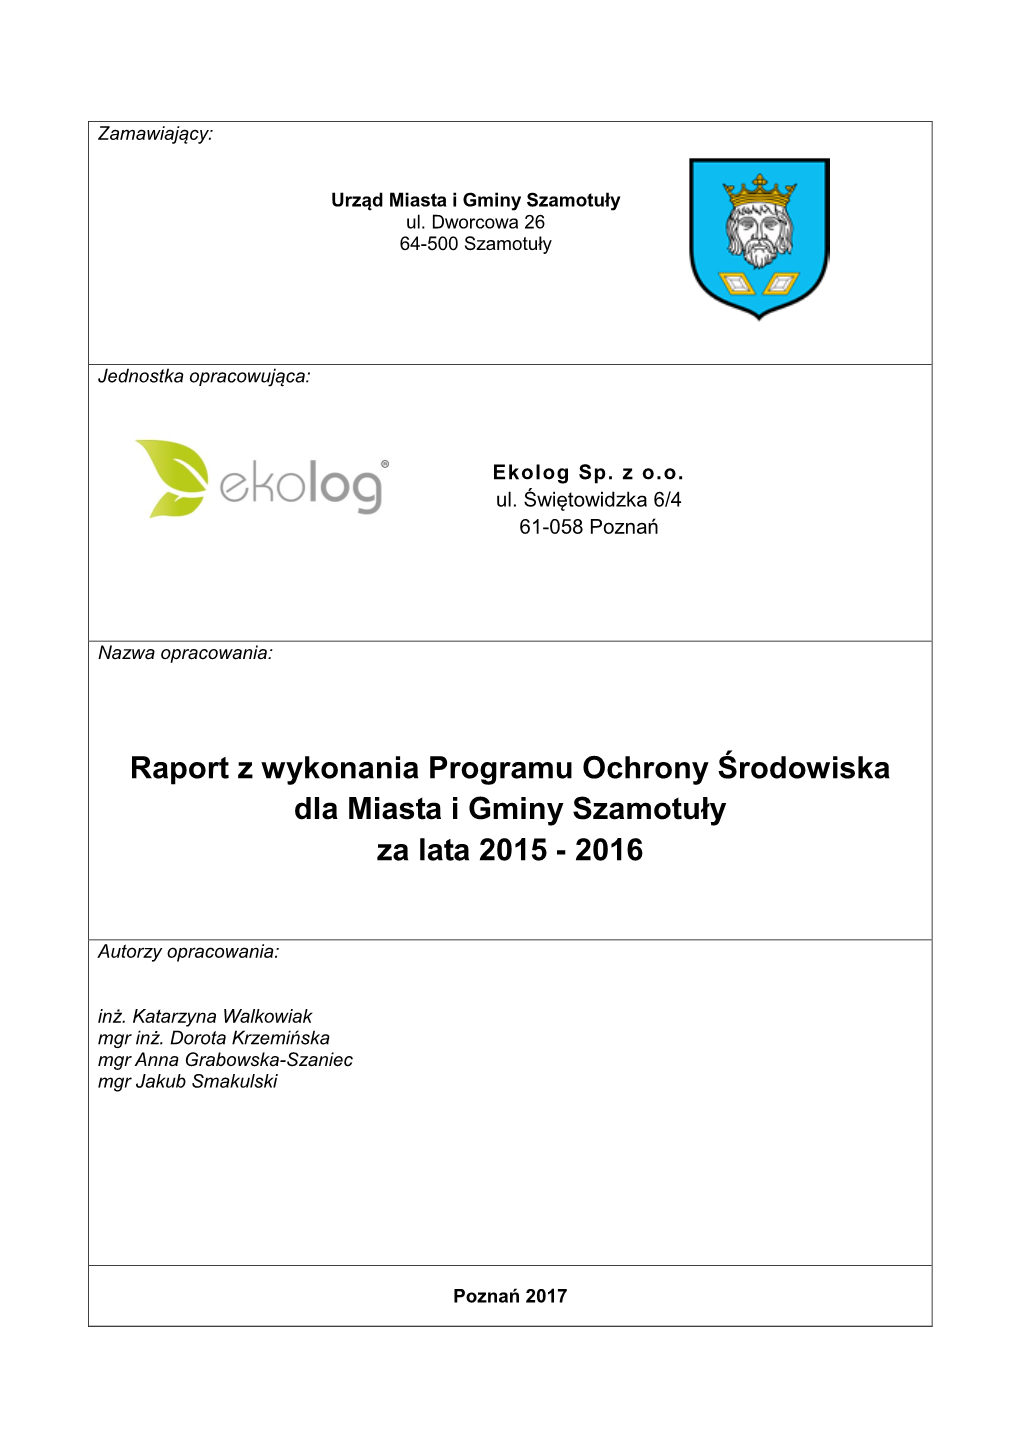 Raport Z Wykonania Programu Ochrony Środowiska Dla Miasta I Gminy Szamotuły Za Lata 2015 - 2016